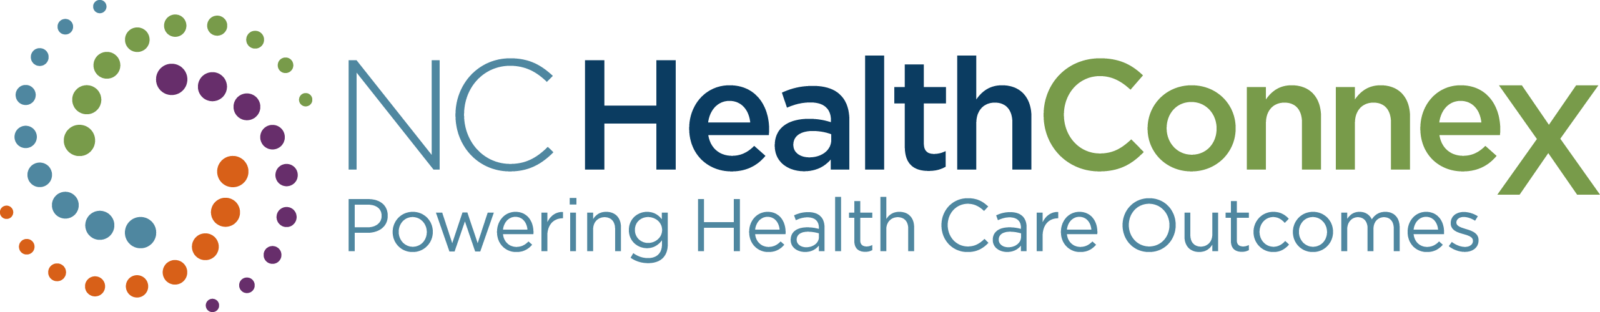 NC Health Connex logo